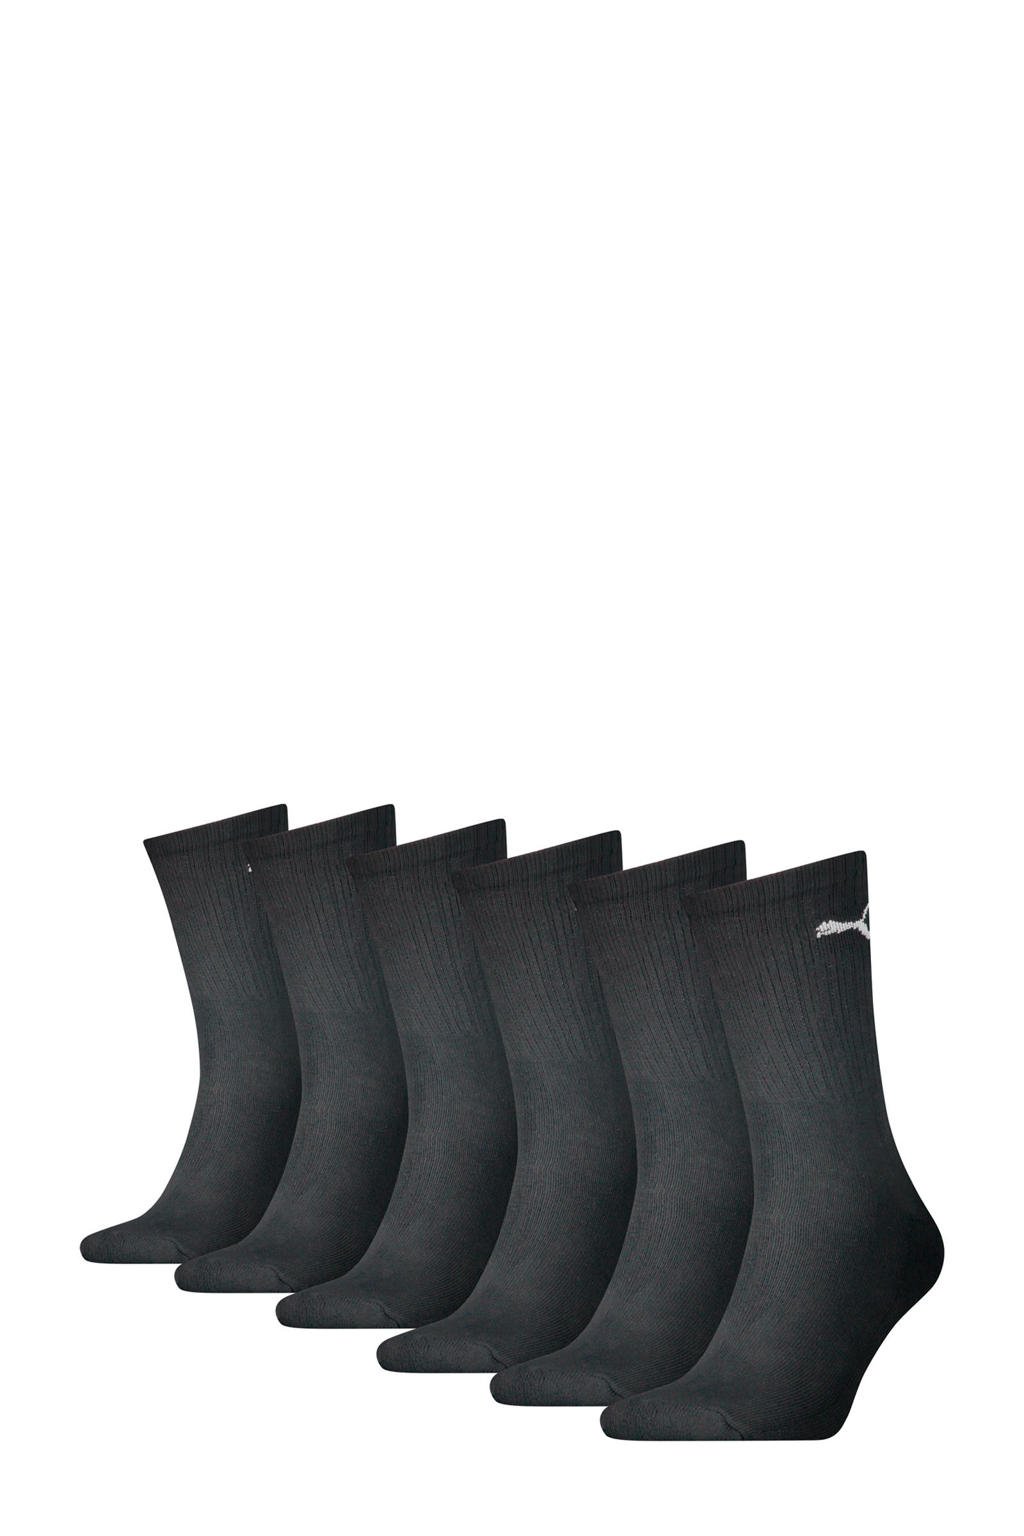 Puma sokken - set van 6 zwart